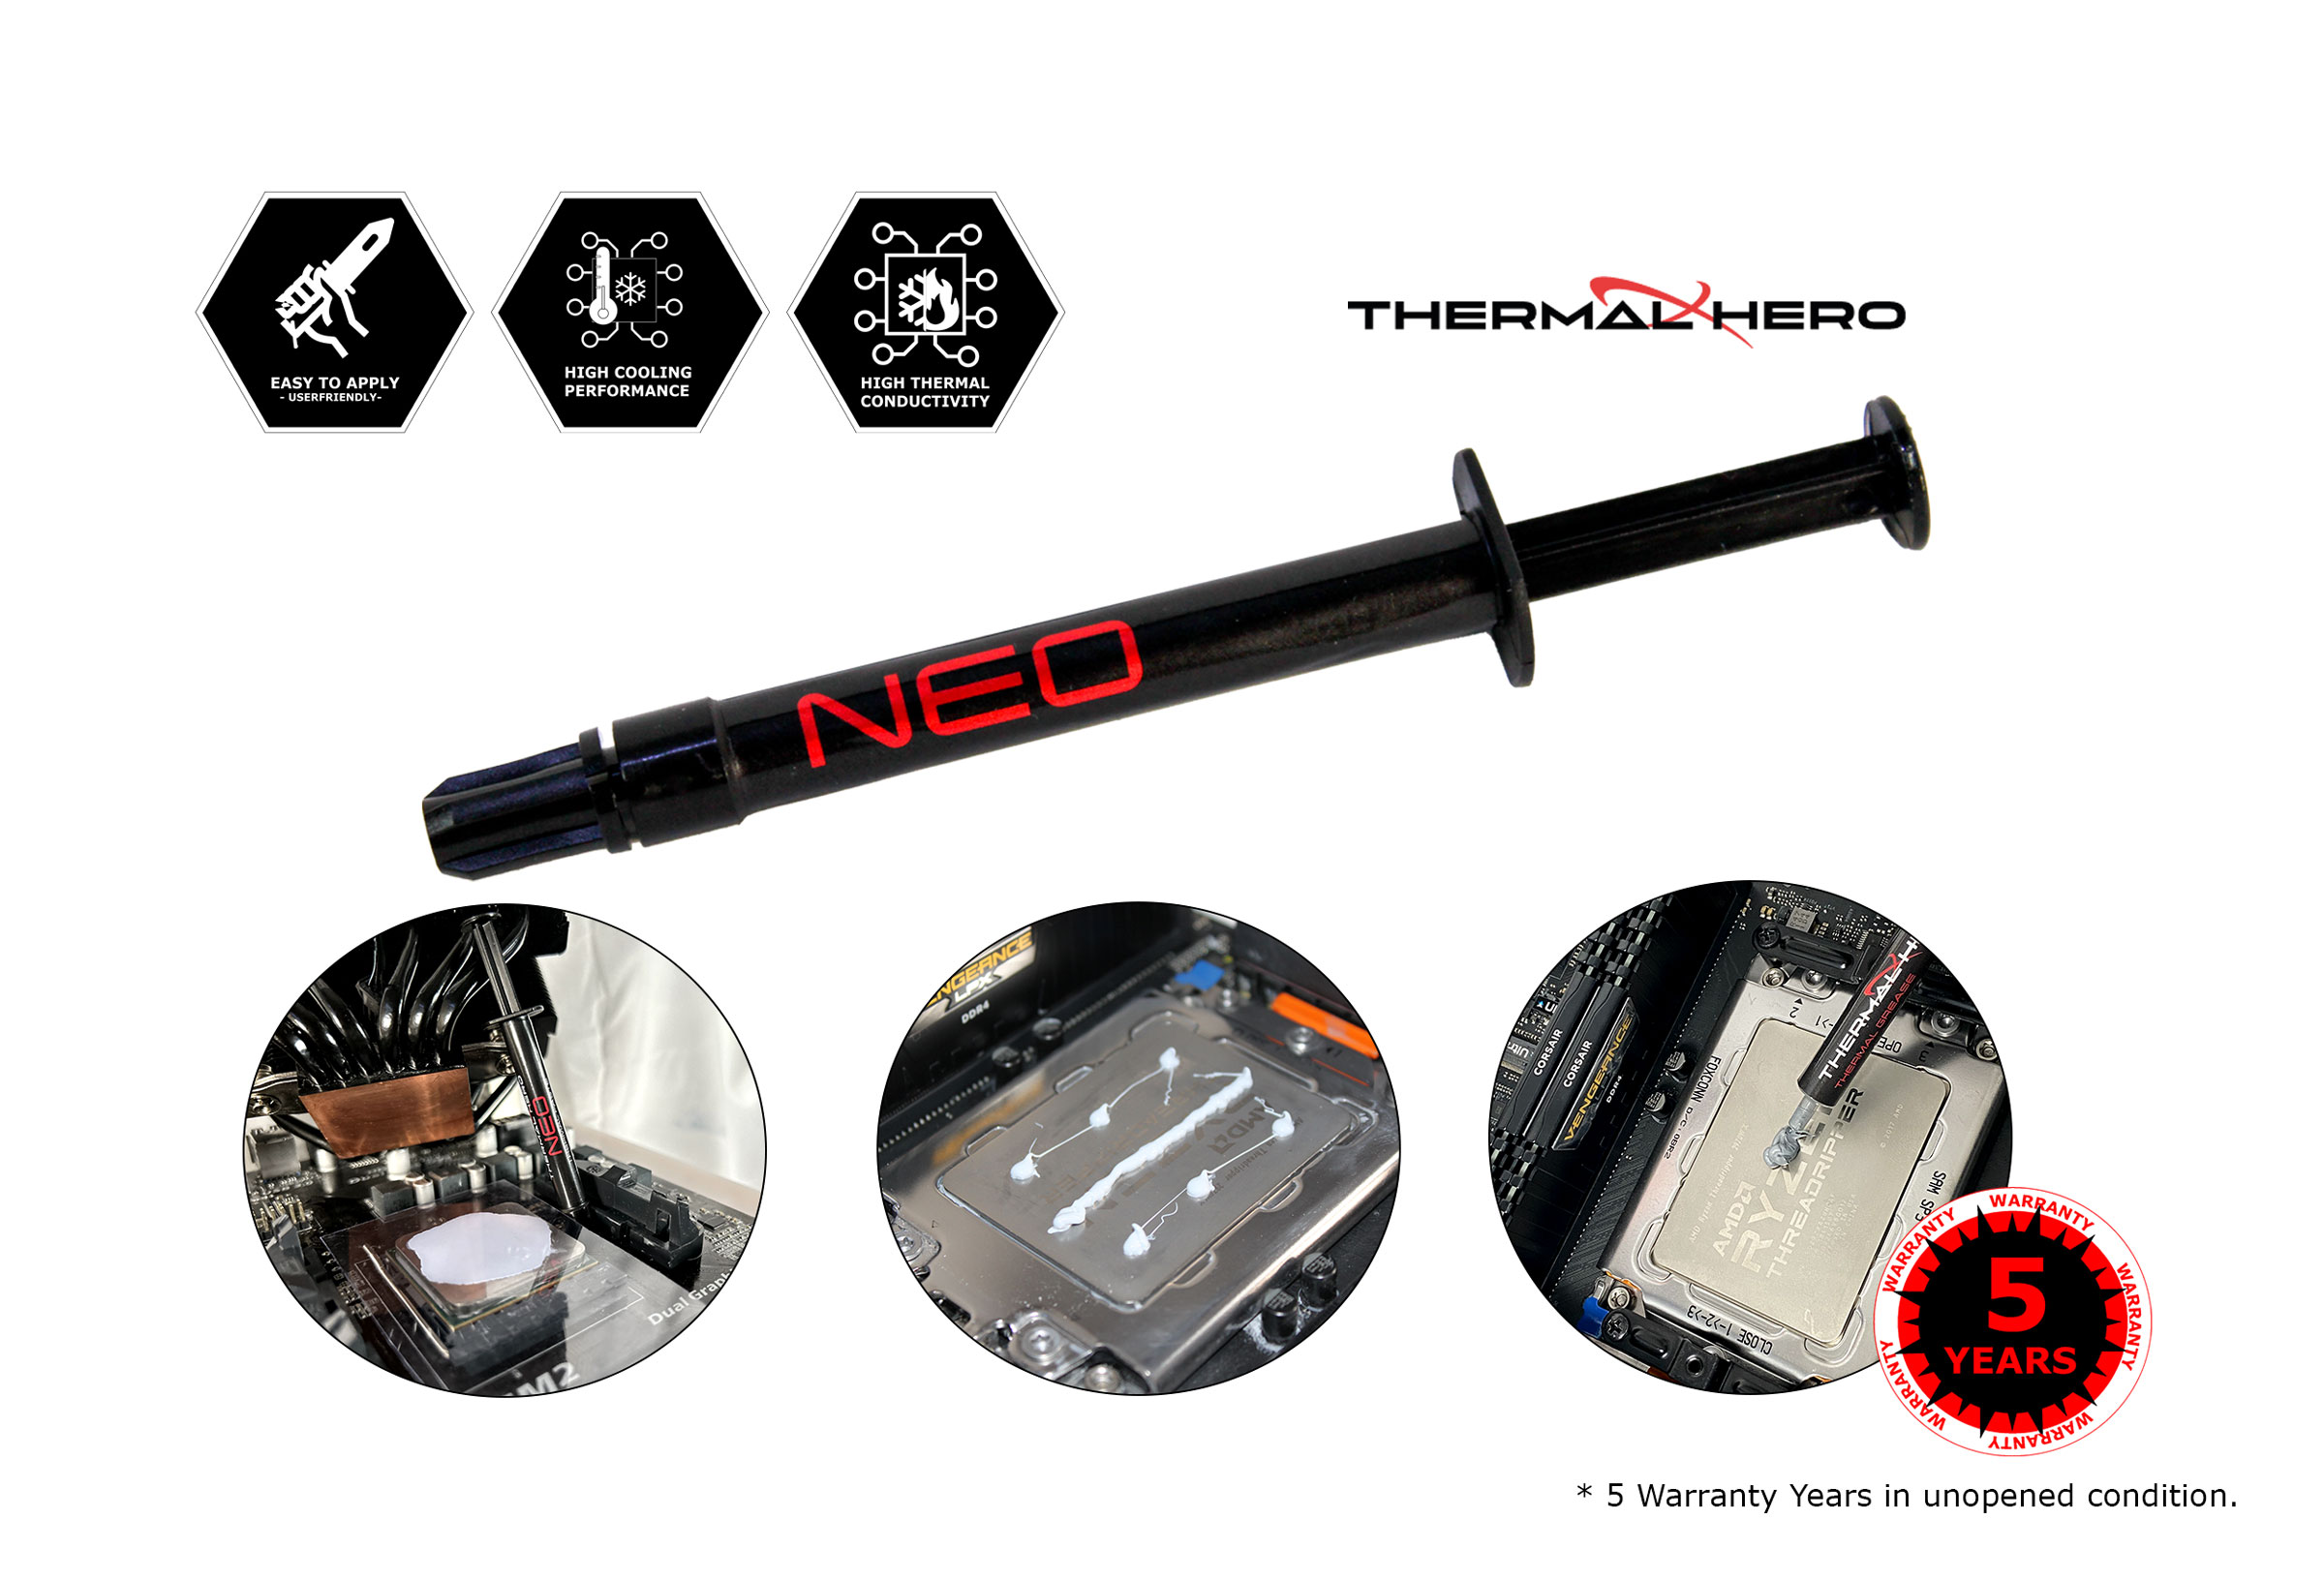 Le Thermal Hero NEO est une pâte thermique à base de silicone qui offre de  nombreuses possibilités d'utilisation grâce à ses excellentes propriétés  thermiques. La pâte thermique a un très bon comportement